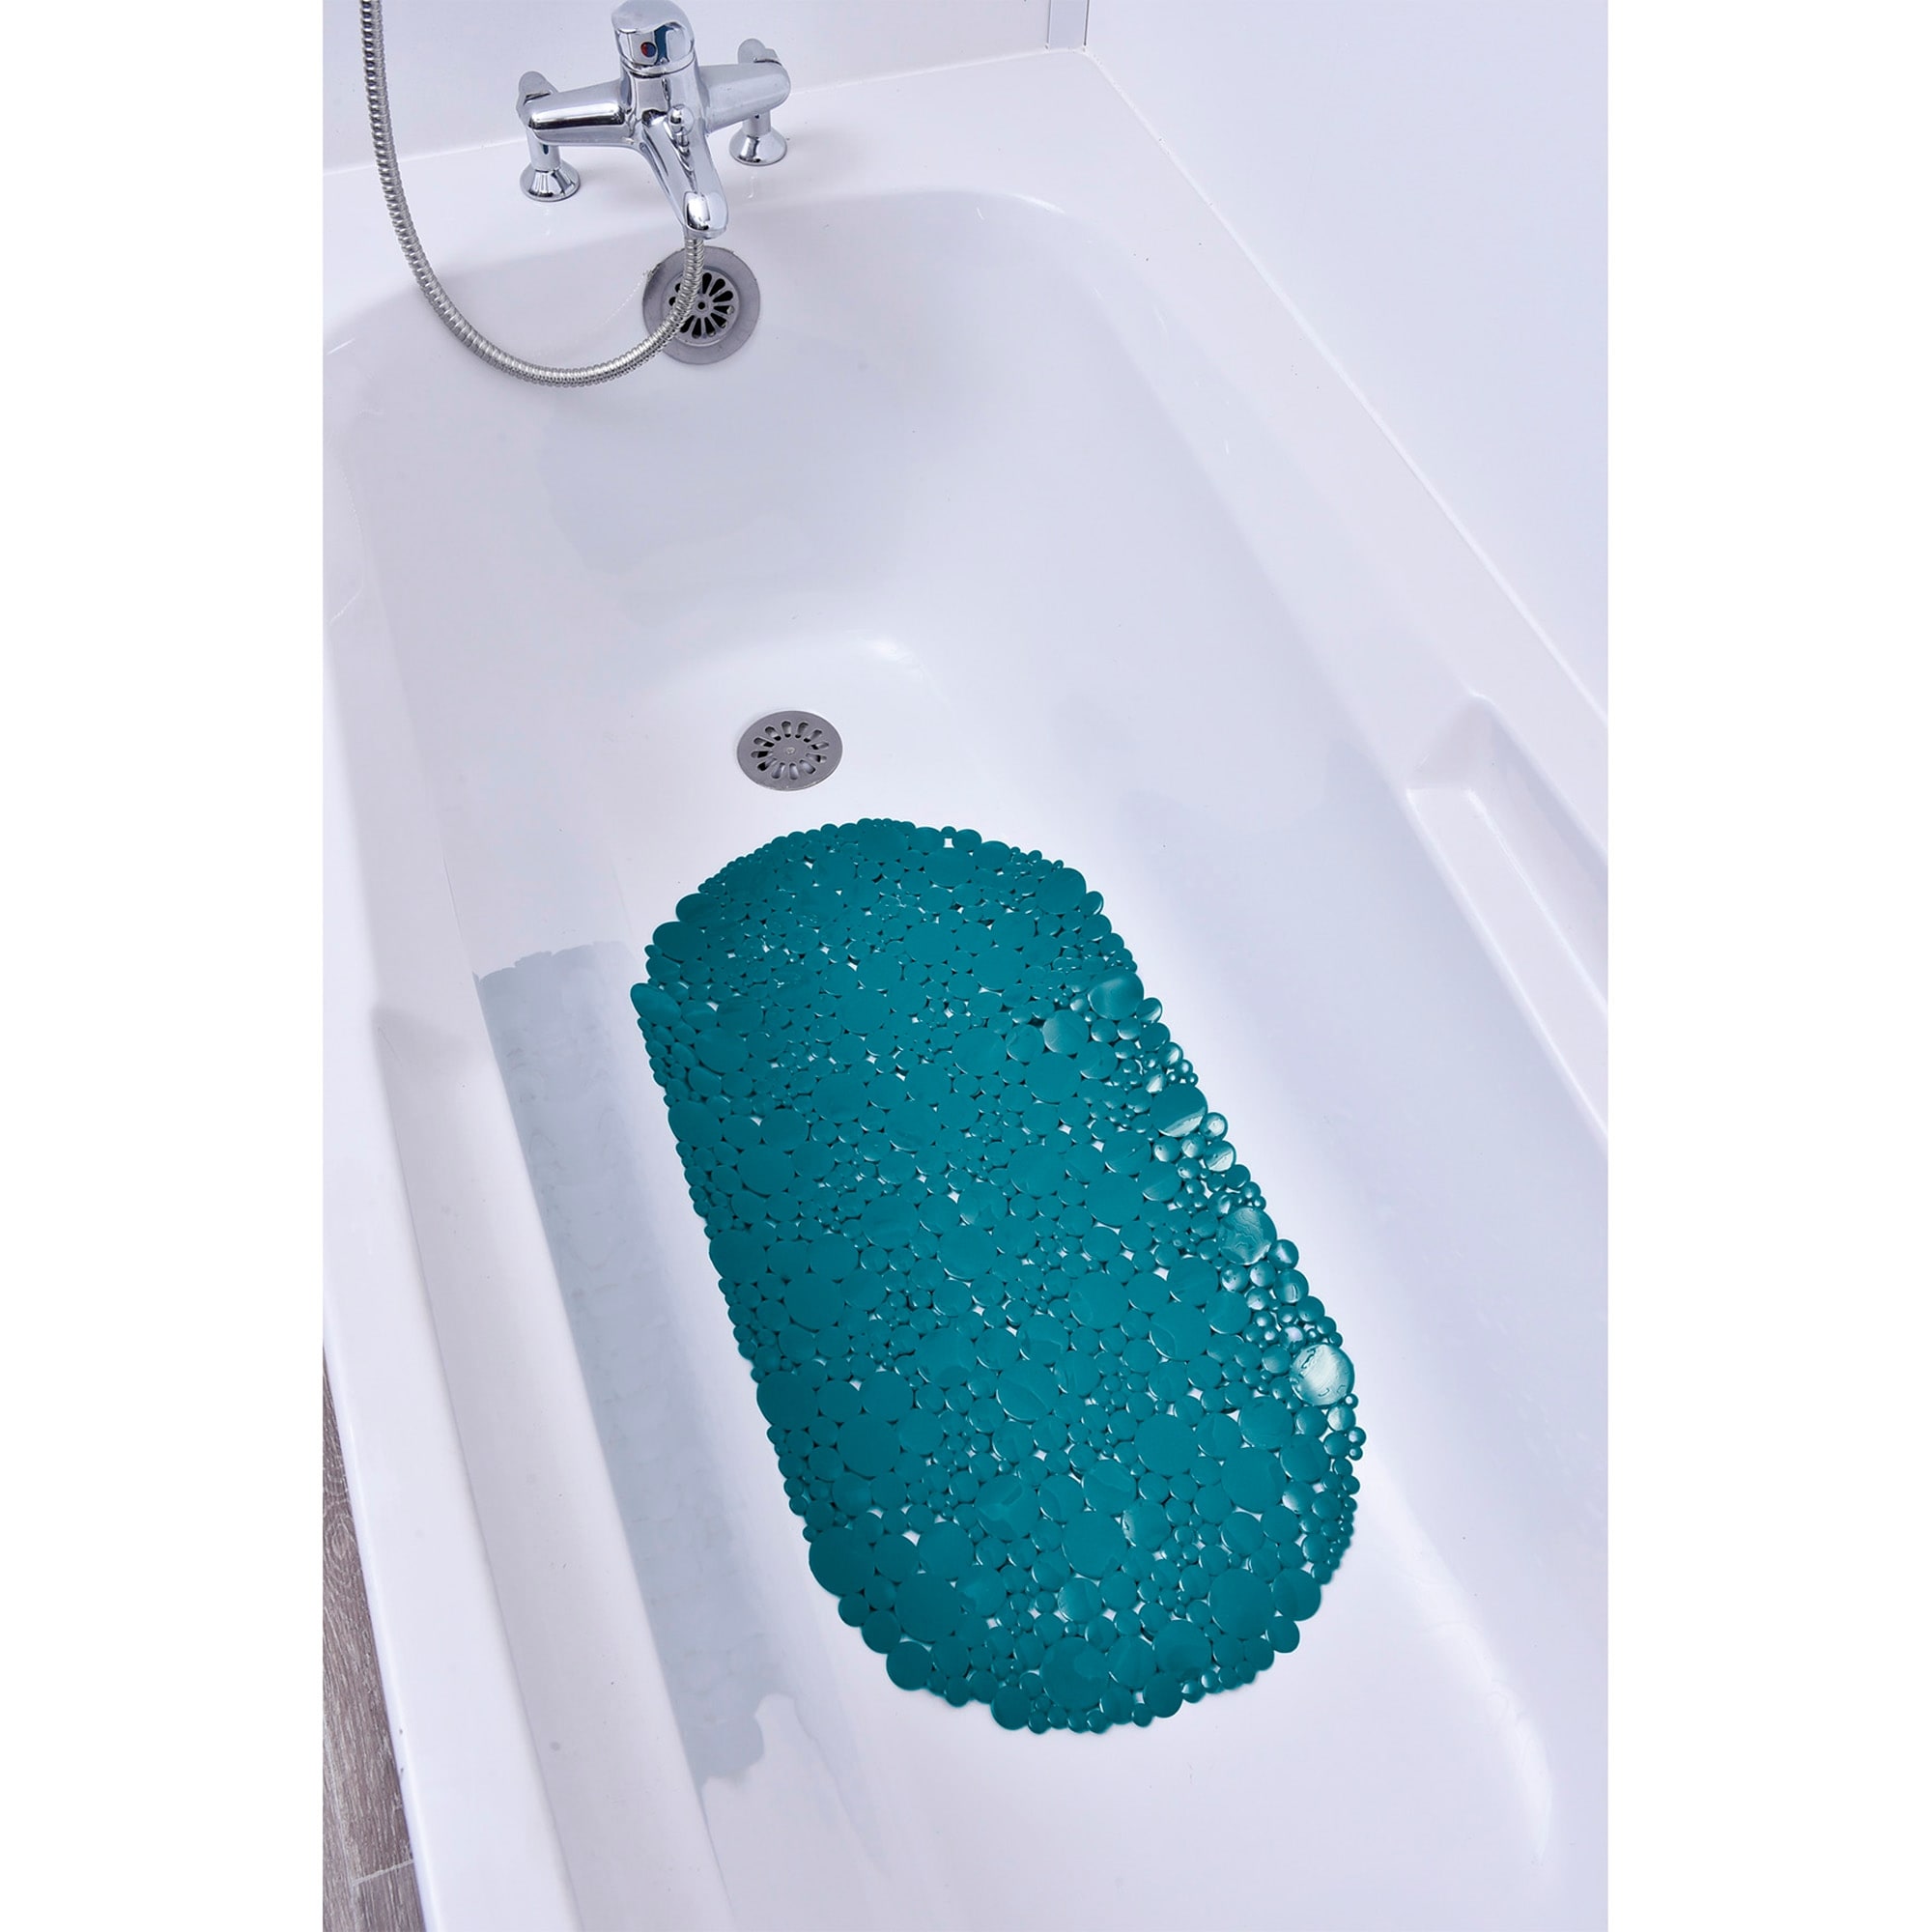 27"x15" PVC Oval Non Slip Bathtub Mat BPA-Free Shower Bathroom Suction Cup Mat 